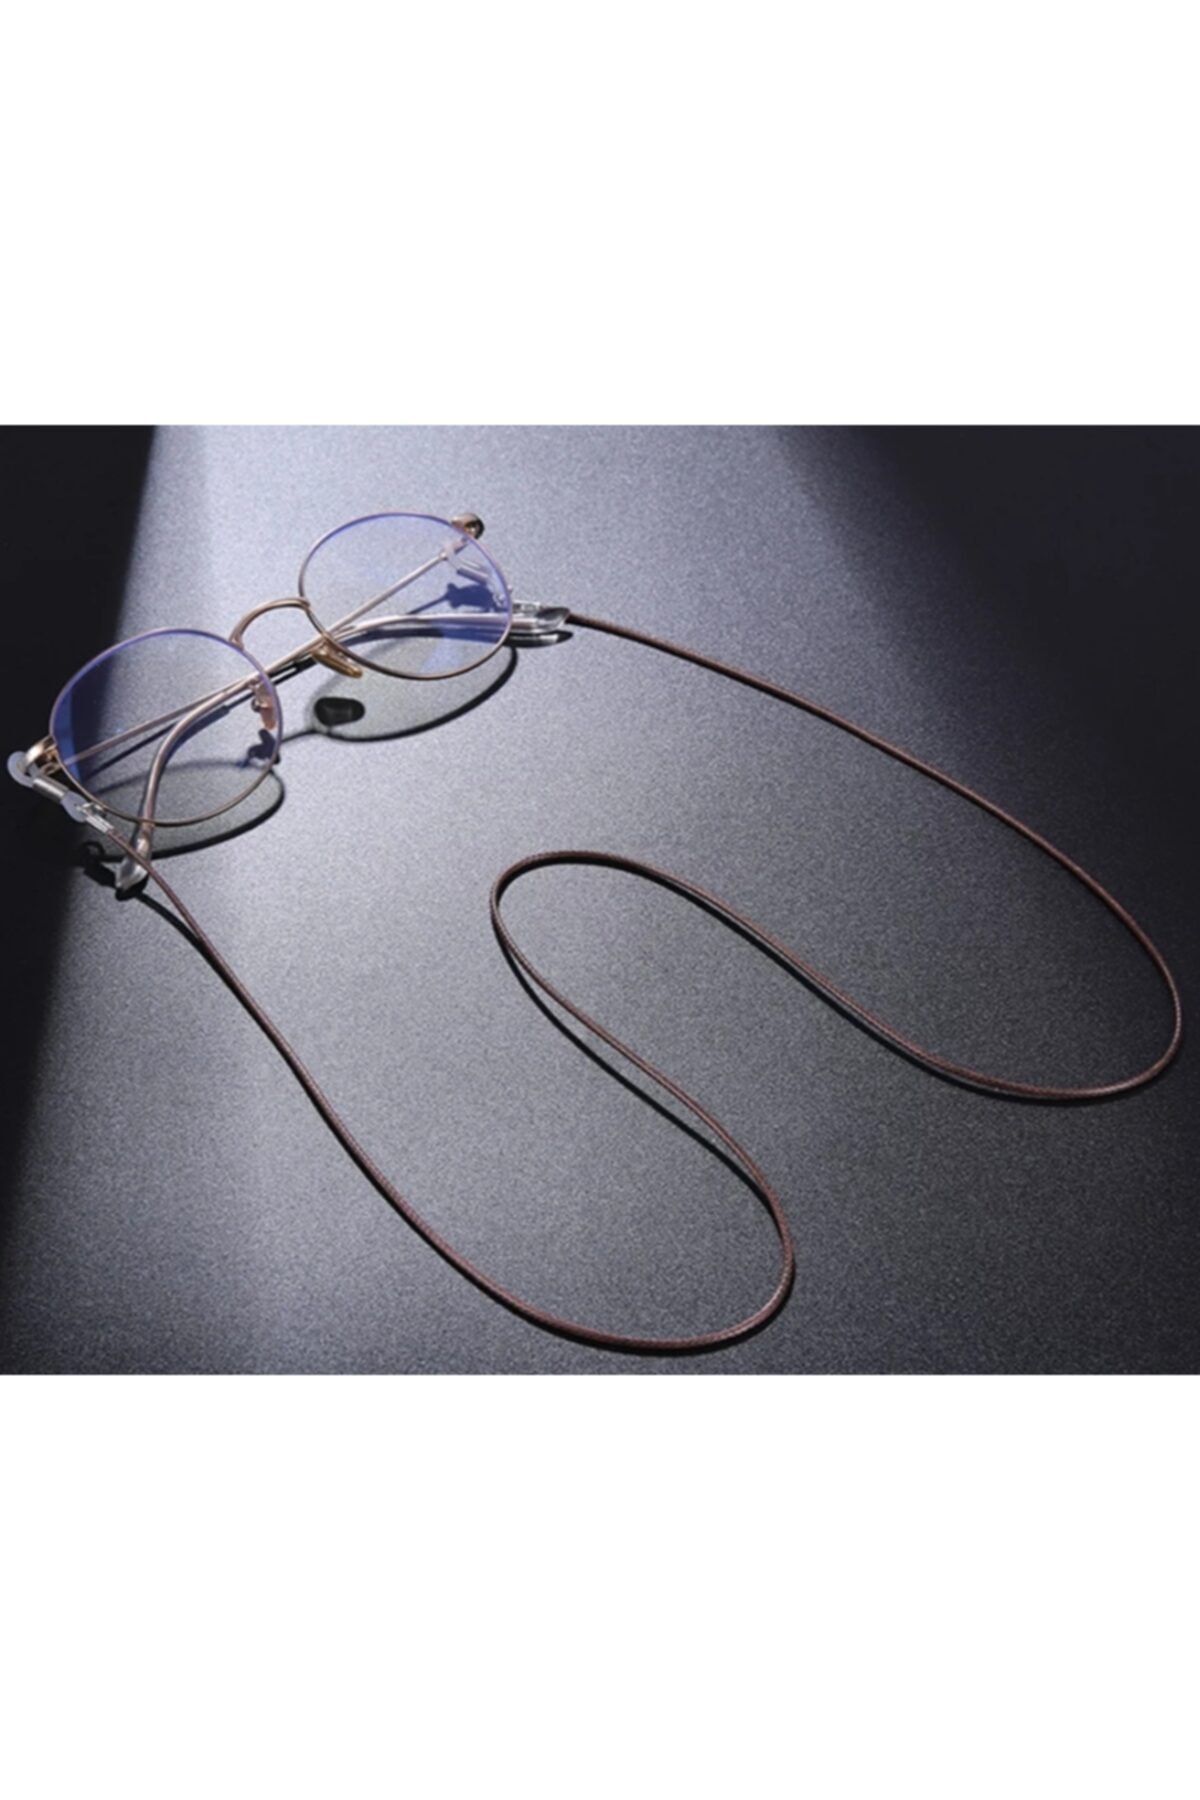 platin hediyelik Kadın Ipli Güneş Gözlüğü Zinciri Gözlük Ipi Askısı Aksesuarı